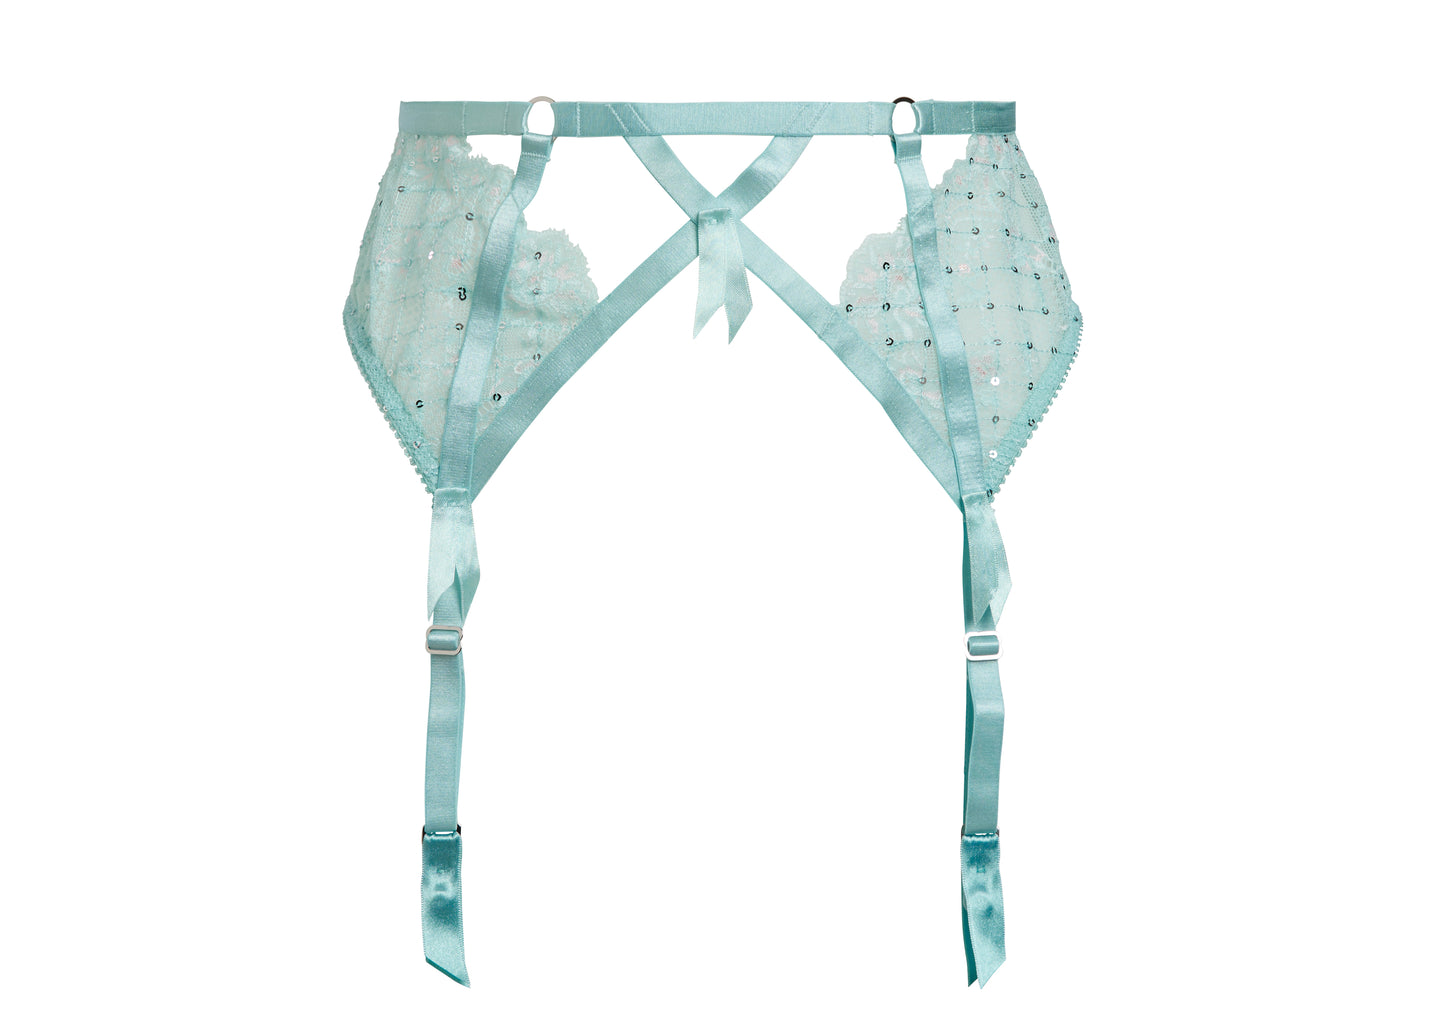 Madame X Suspender/Garter Belt in Powder Blue By Dita Von Teese Lingerie - XS-2X